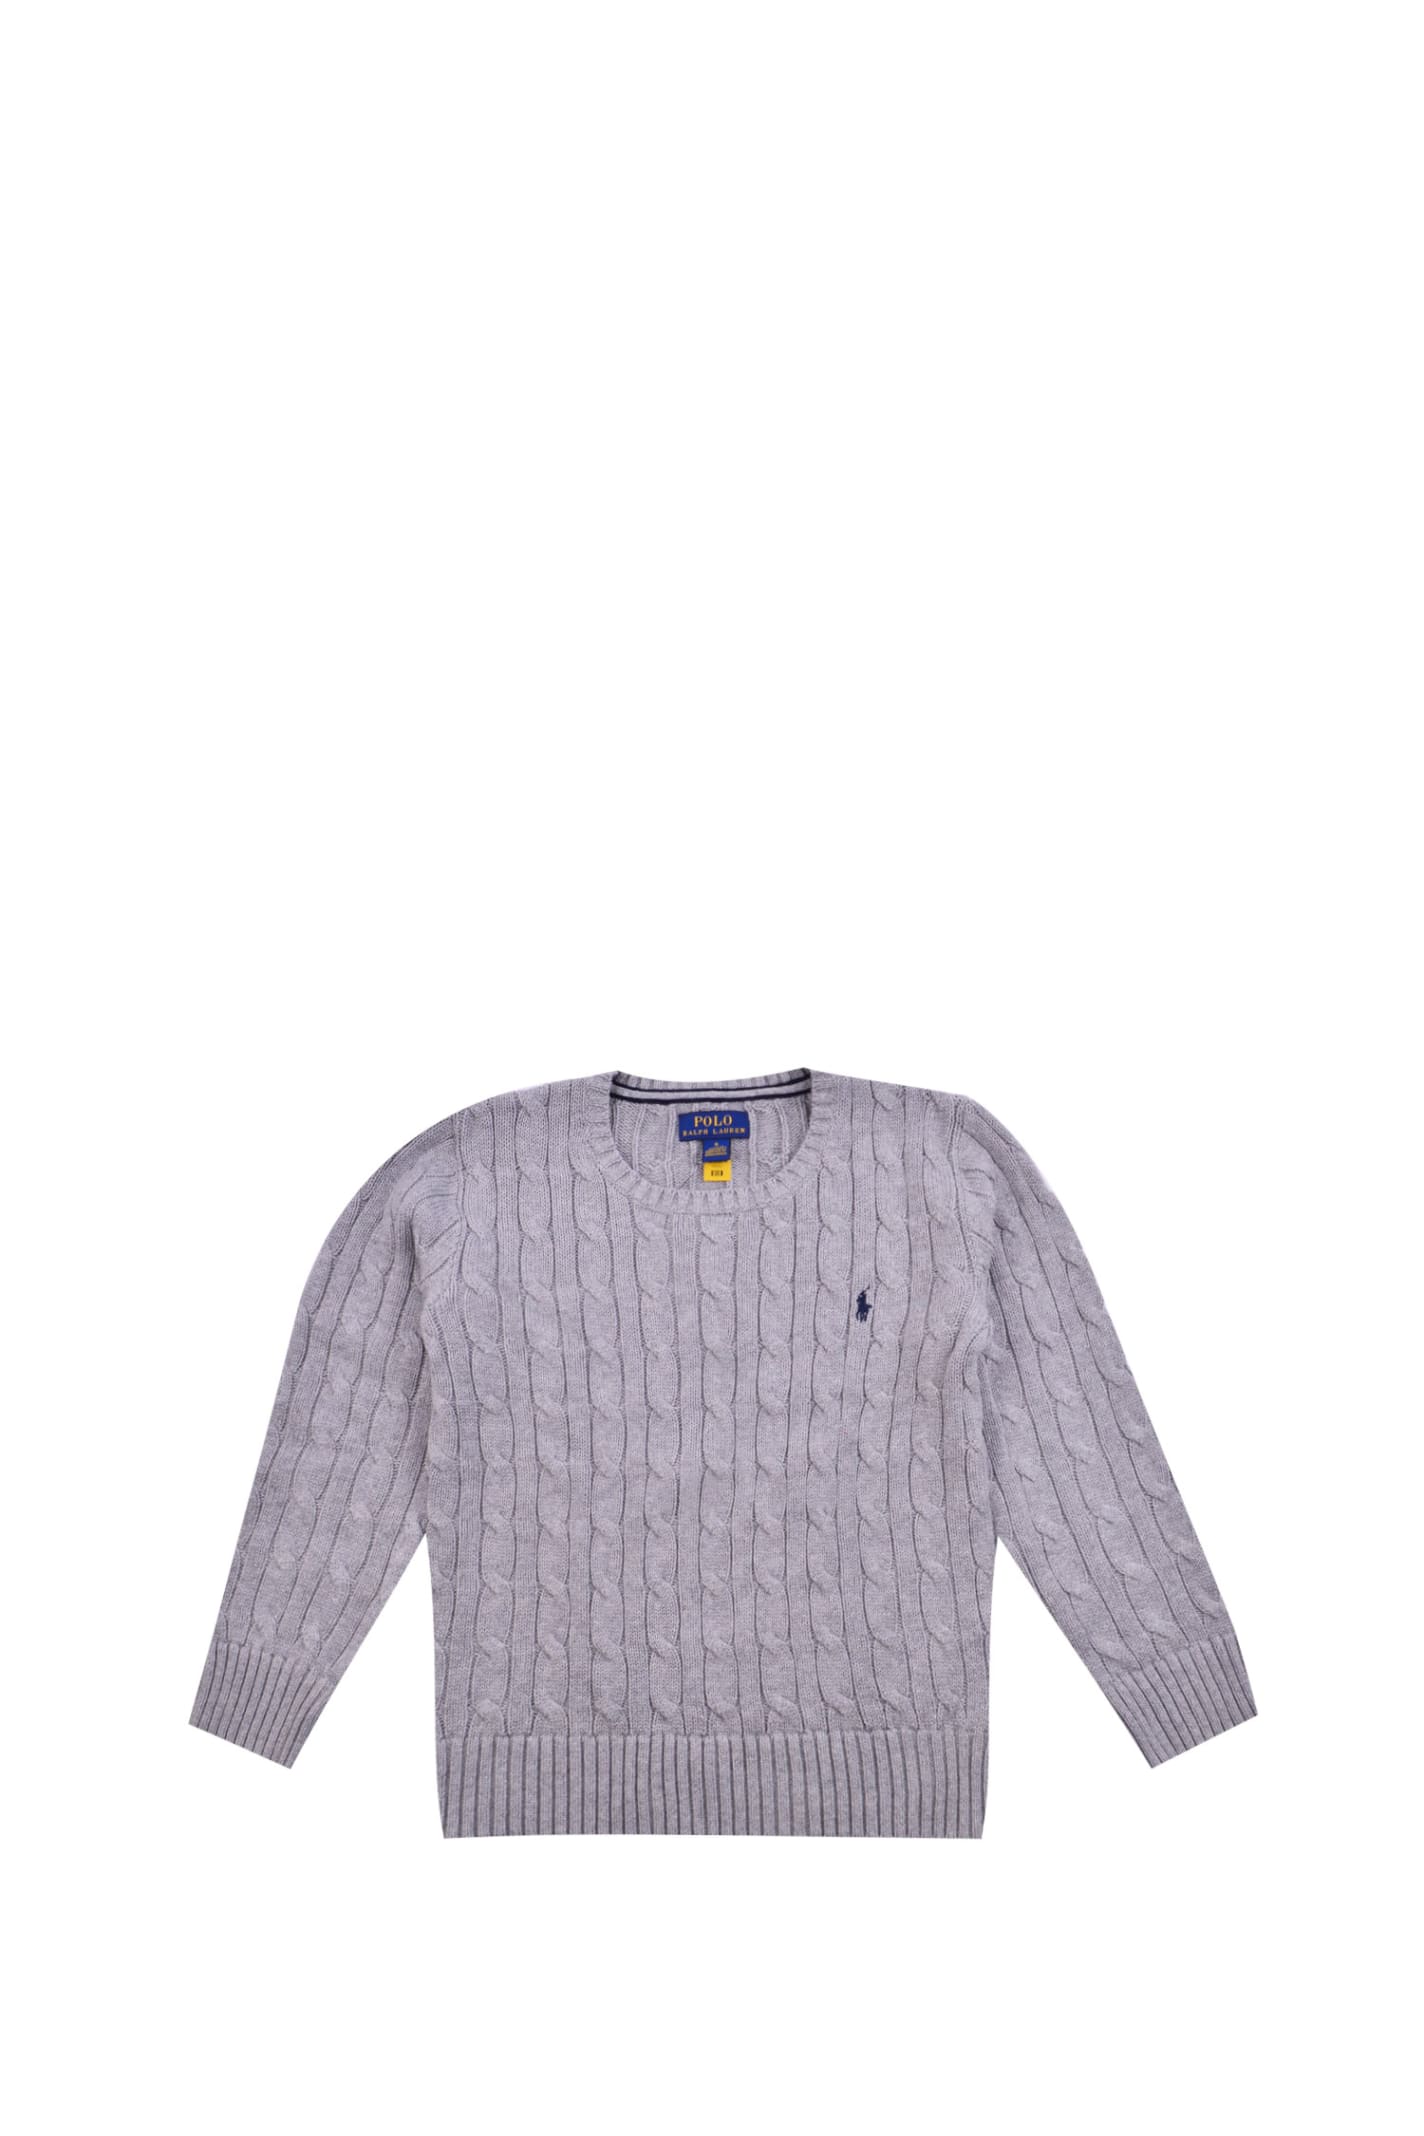 Ralph Lauren Kids' Cable Sweater In Grey